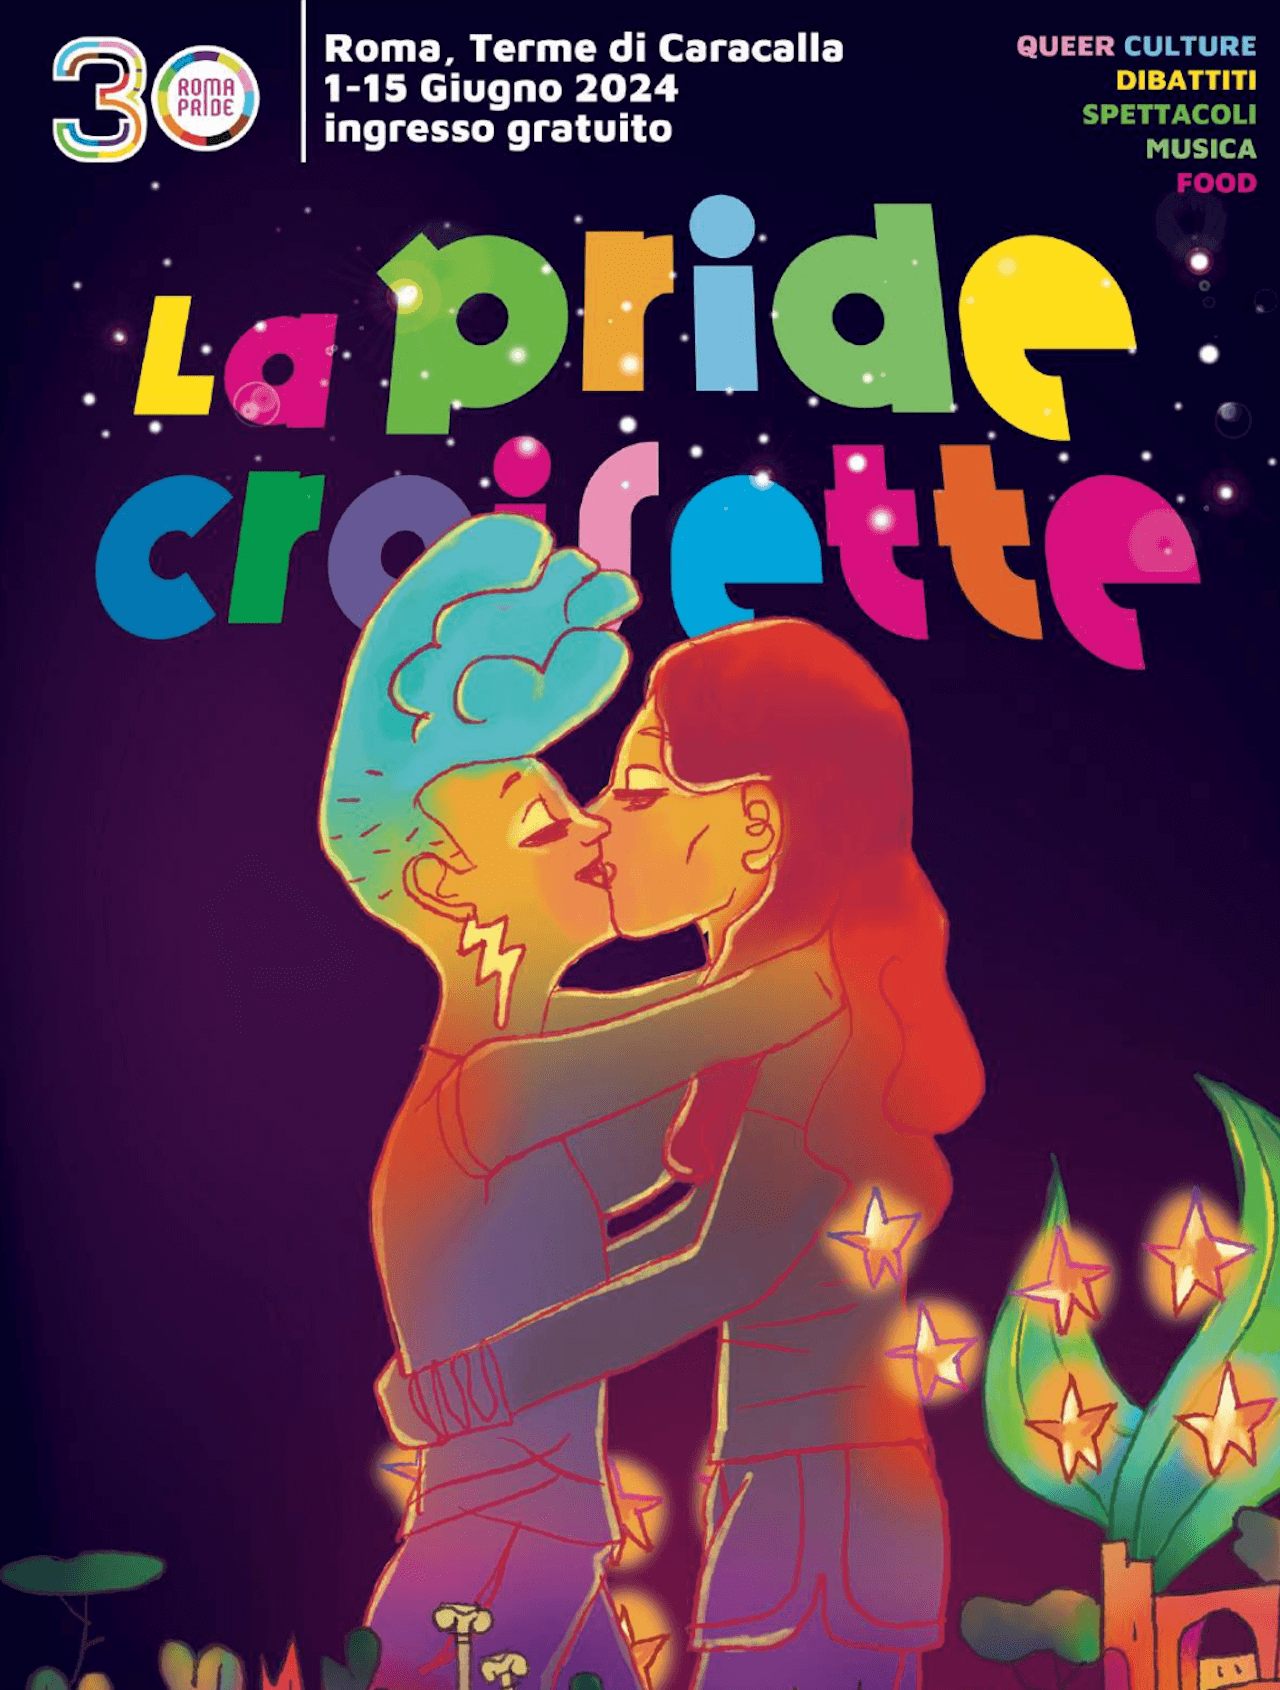 Roma Pride 2024, manifesto politico, nuovo percorso e via alla Pride Croisette con Patty Pravo - Pride Croisette logo - Gay.it